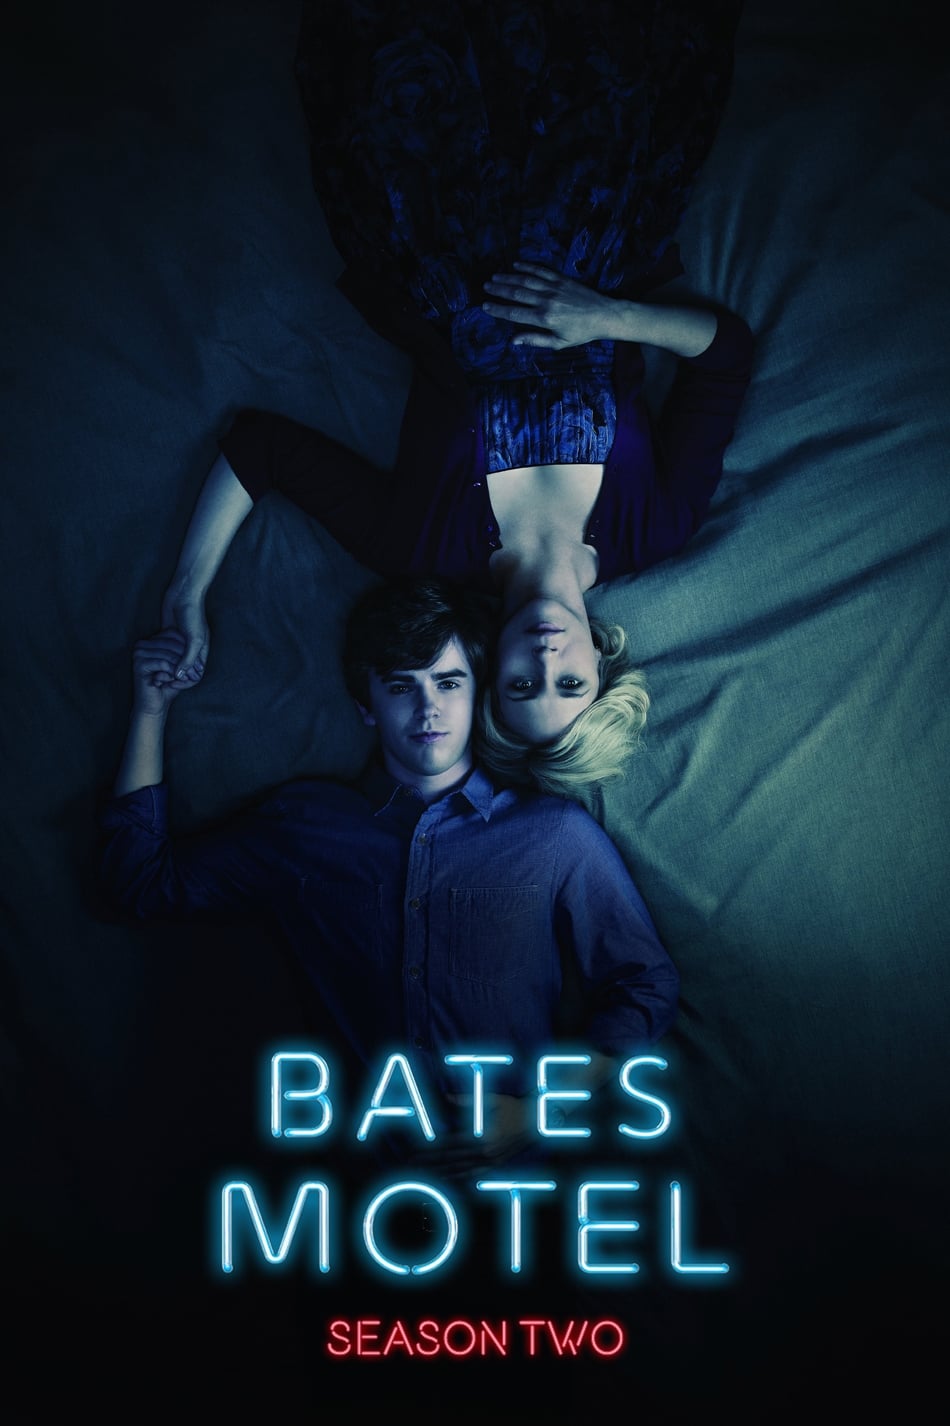 ดูหนังออนไลน์ Bates Motel (2014) Season 2 ซับไทย EP 8 เบส โมเทล ปี2 ตอนที่8 (ซับไทย)